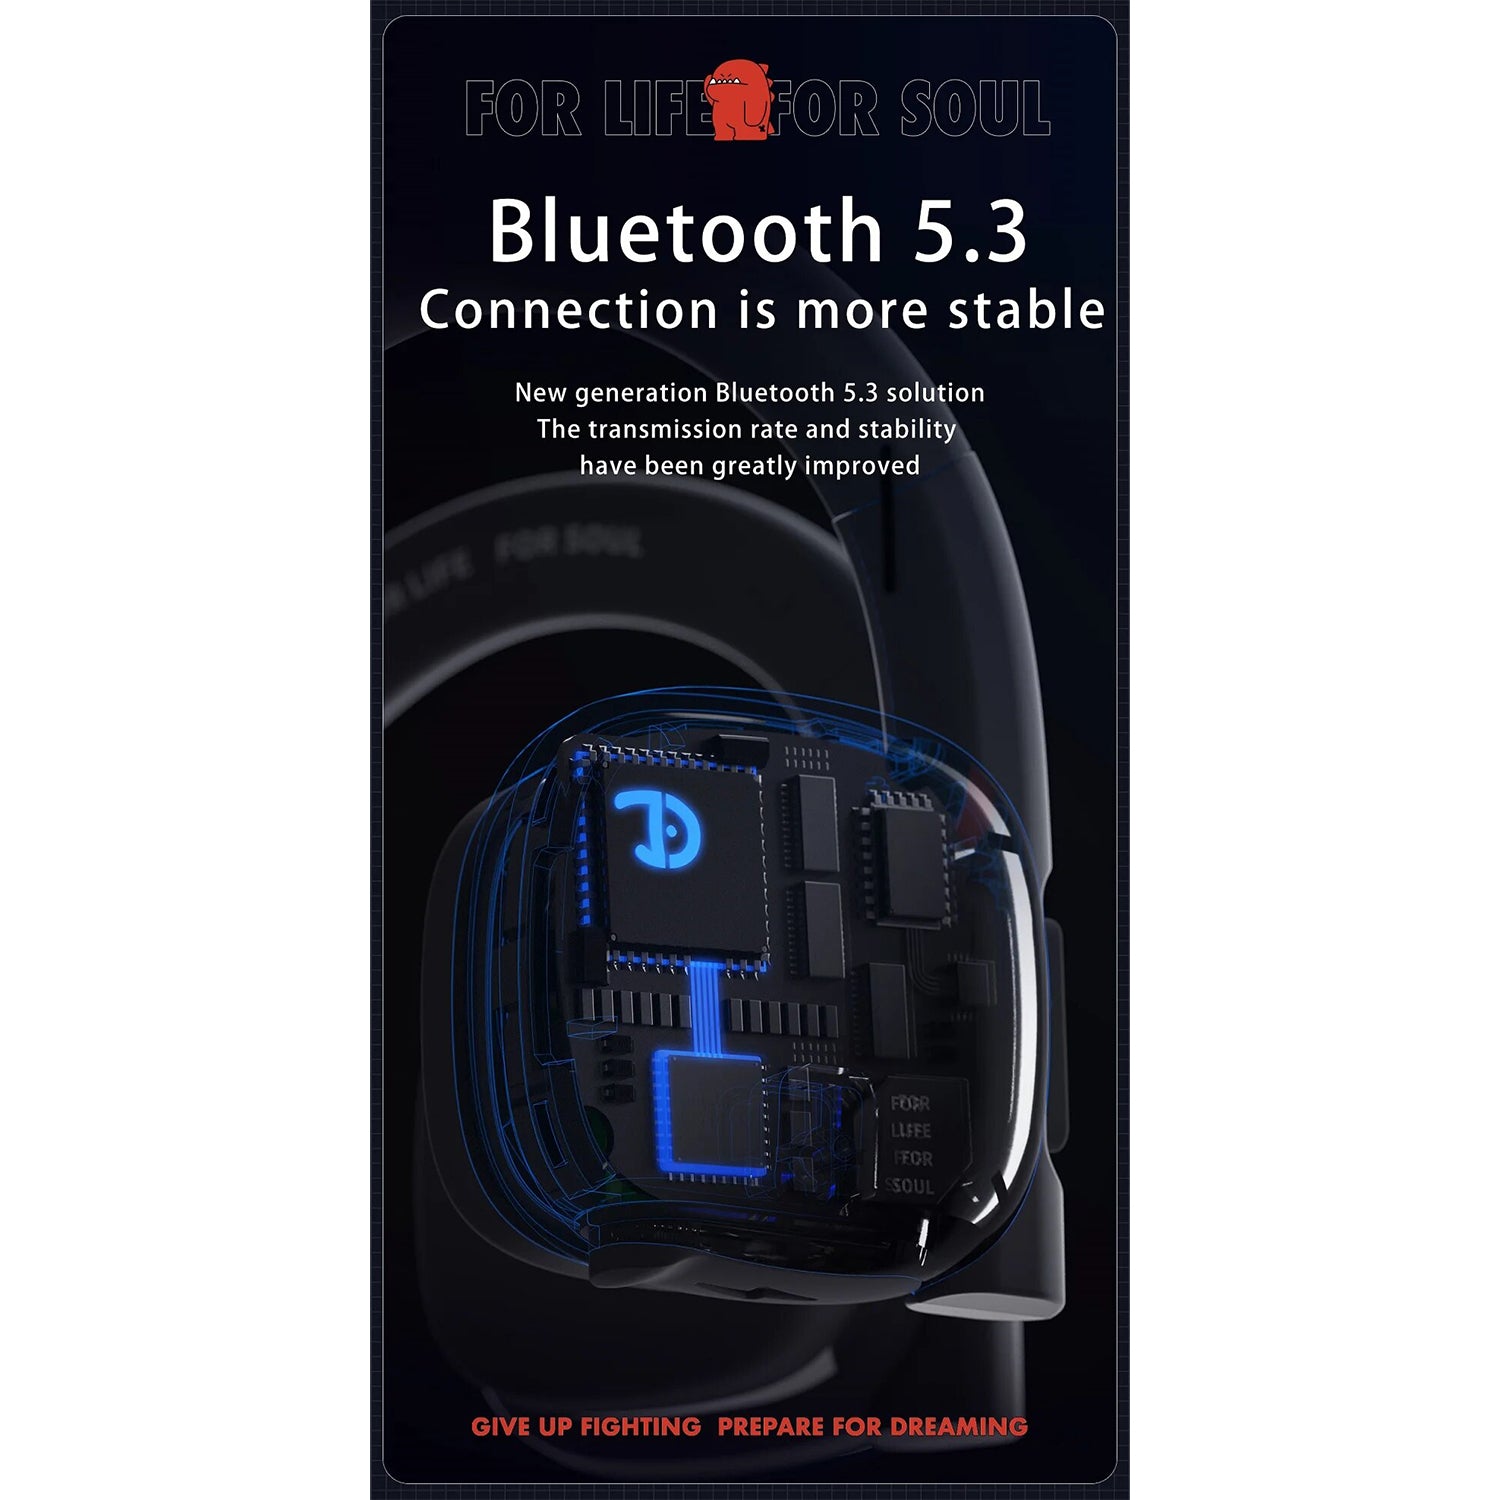 O2W SELECTION DMOOSTER BH330 Open-Ear Bluetooth Sports Wireless Earphones, Black